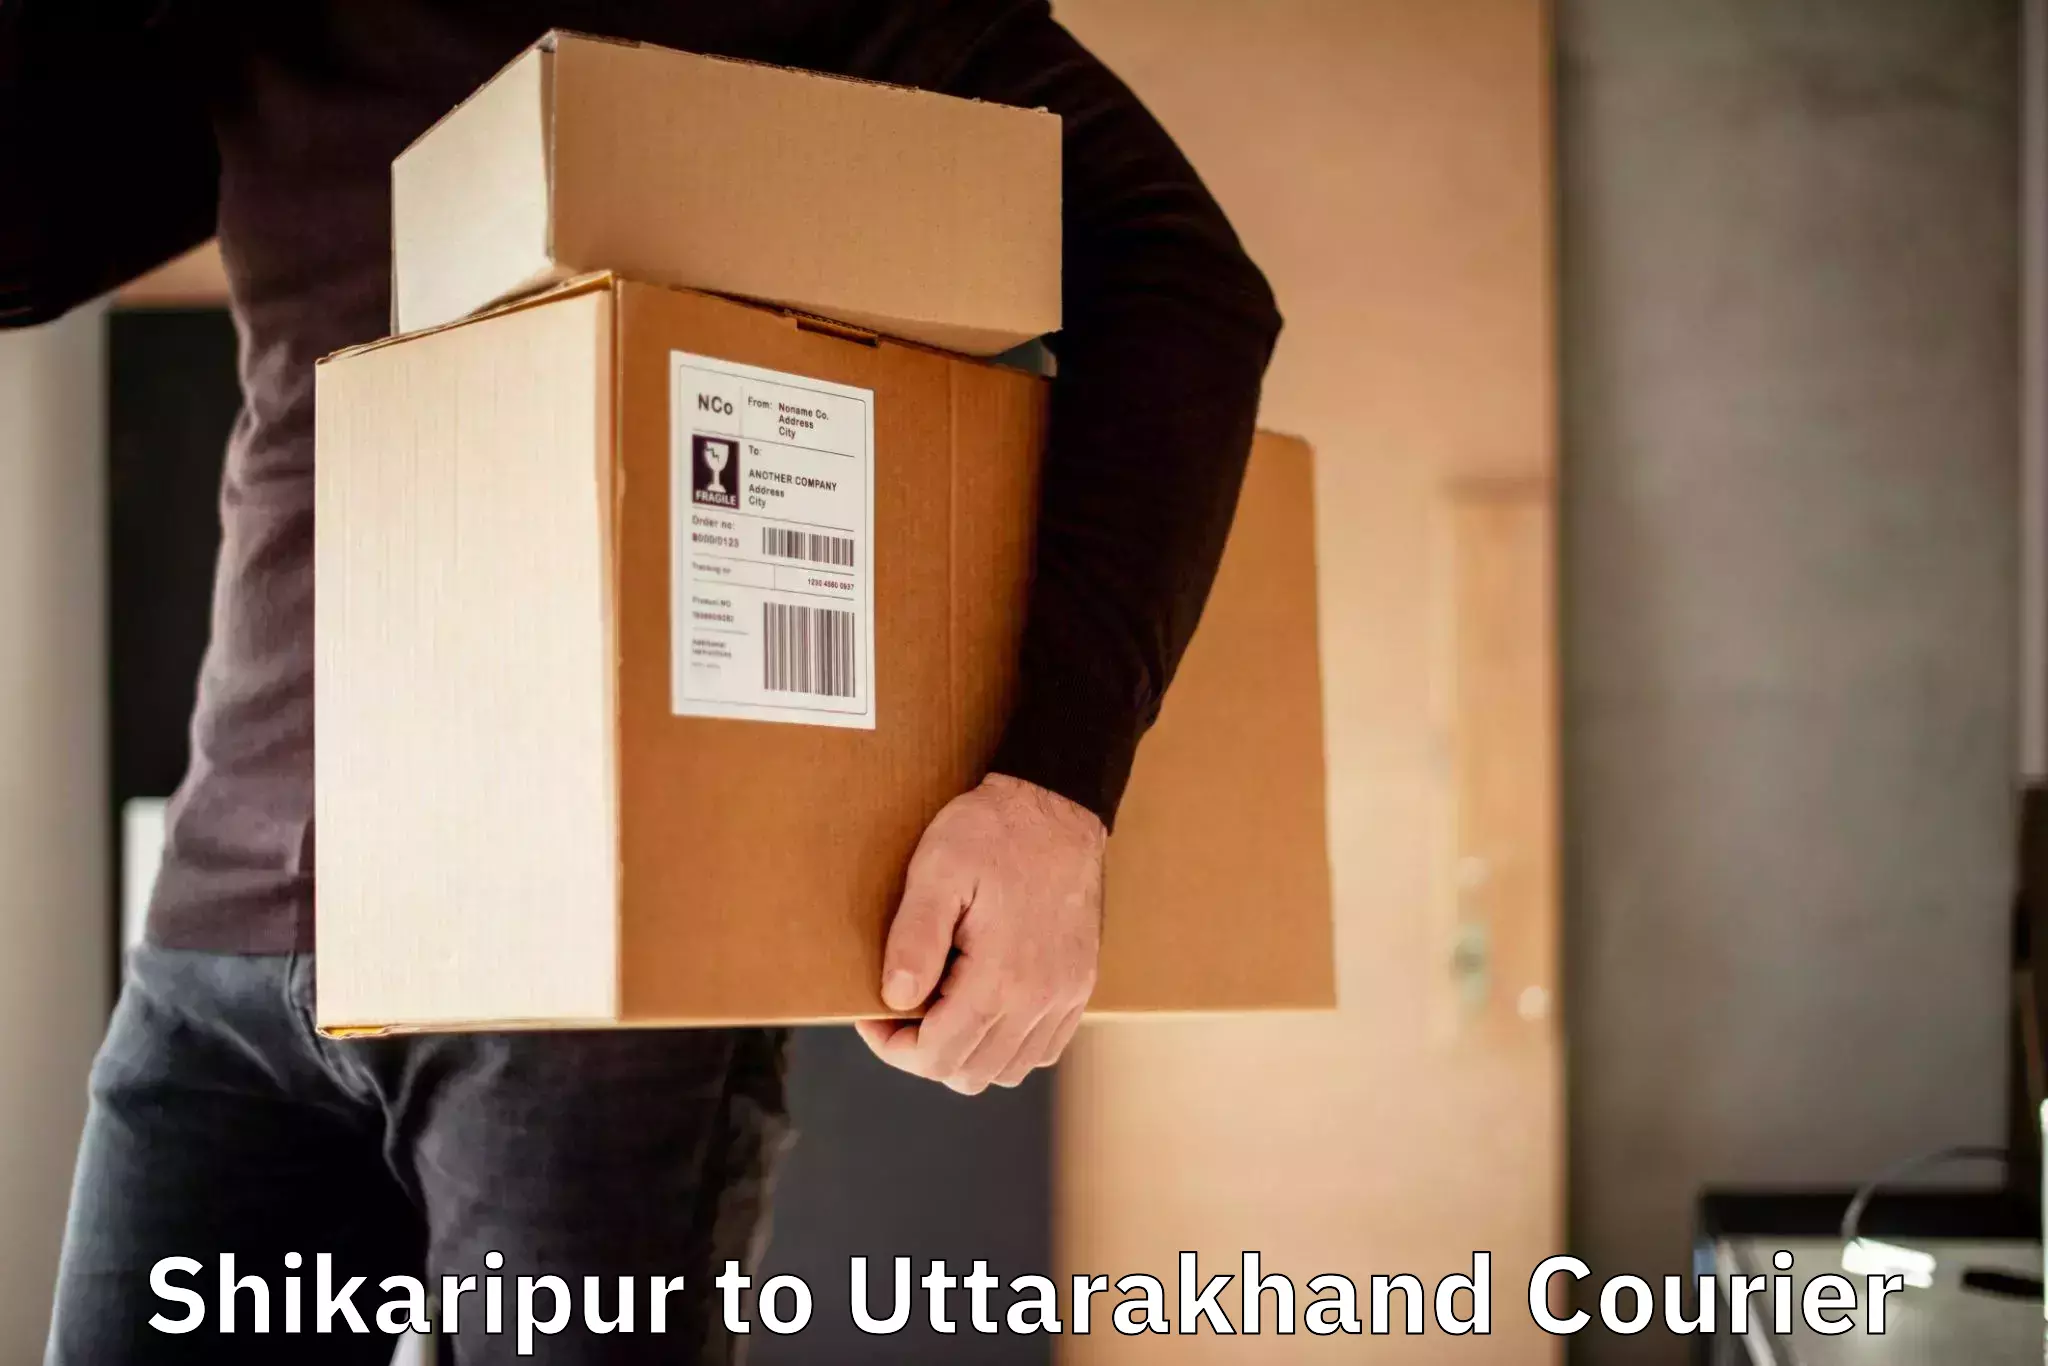 Smart courier technologies Shikaripur to Gopeshwar